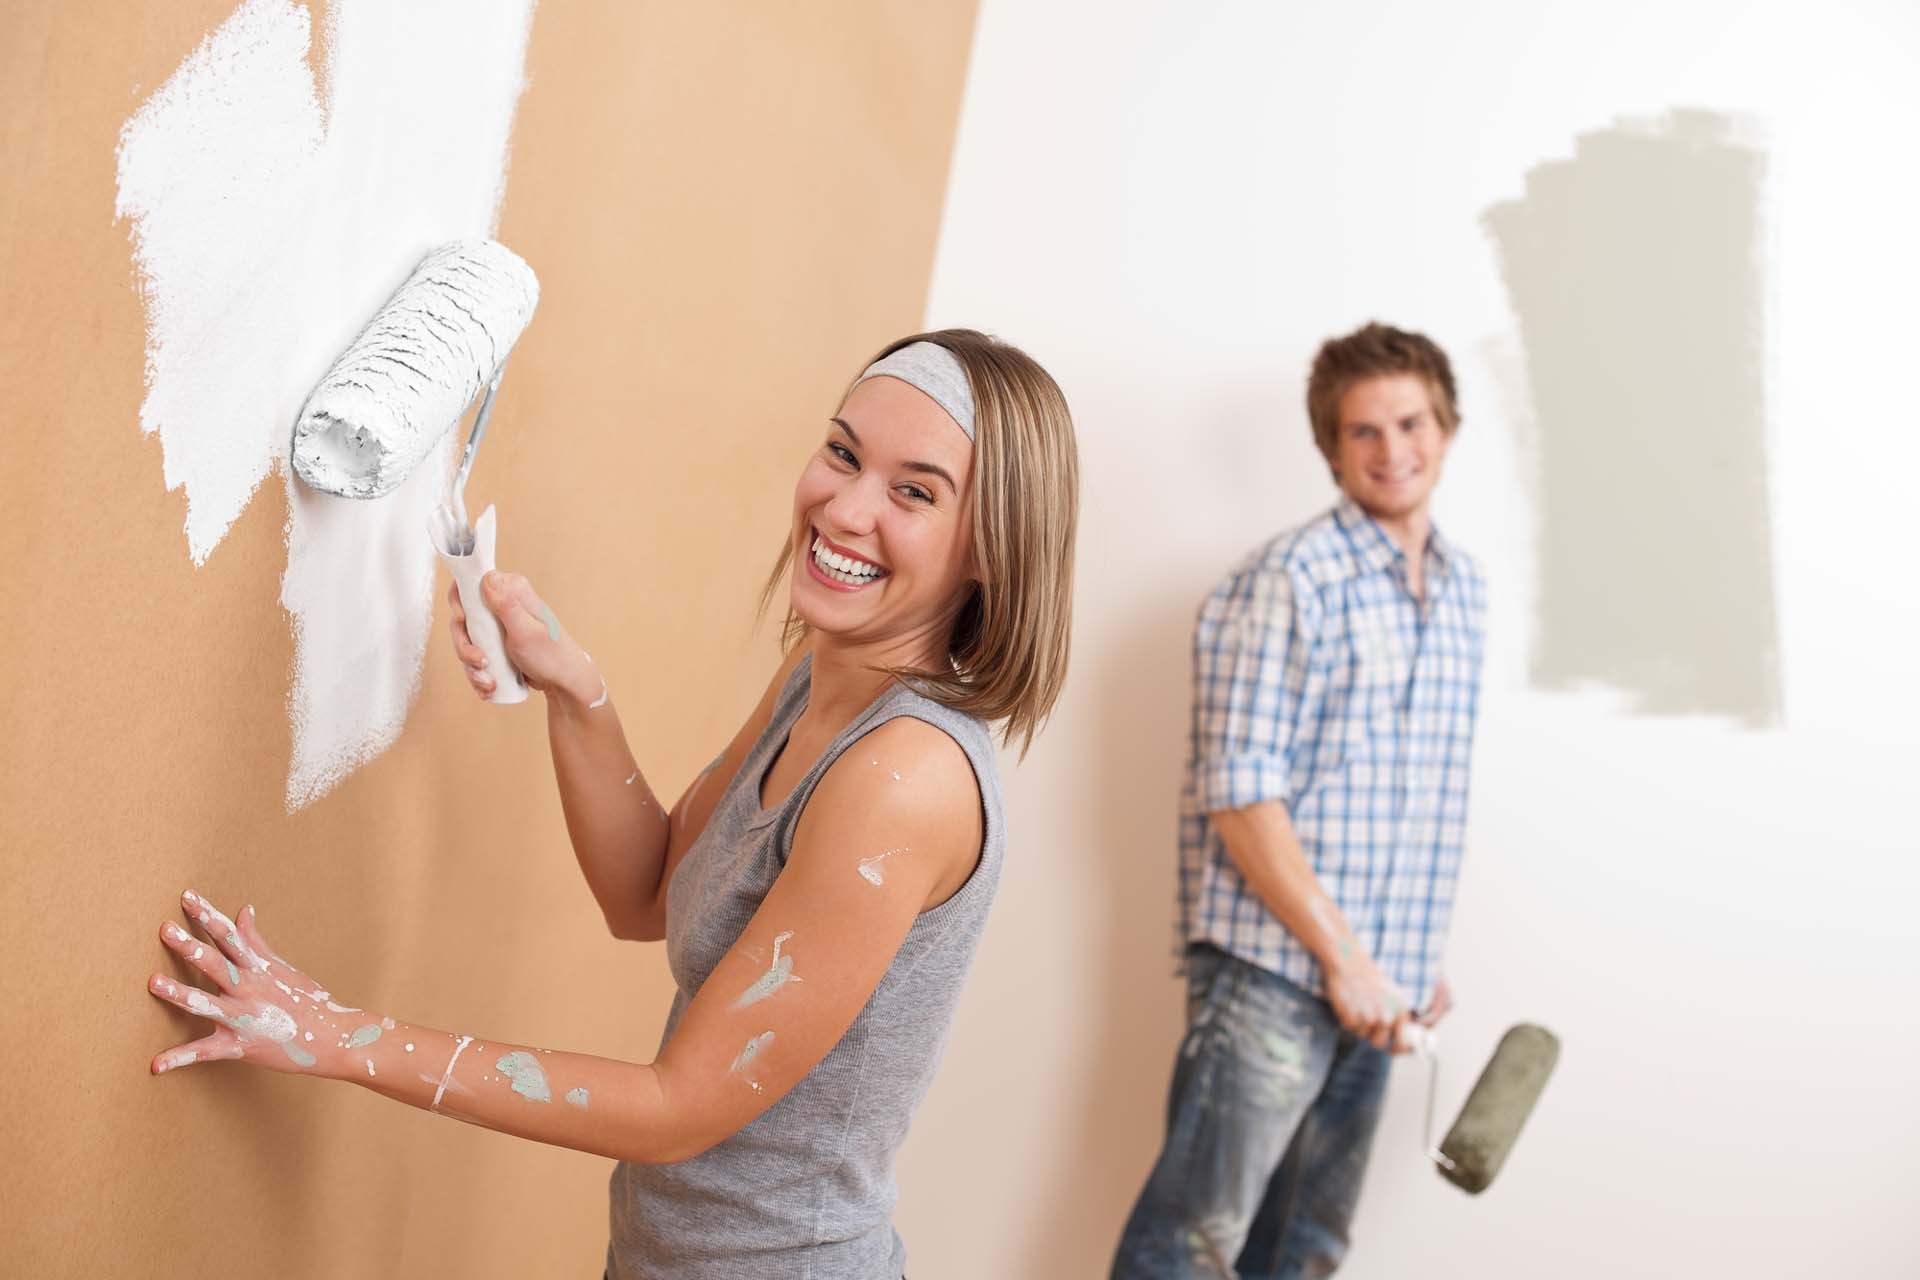 Quy trình chuẩn khi sơn tường nhà cũ dành cho tất cả mọi người